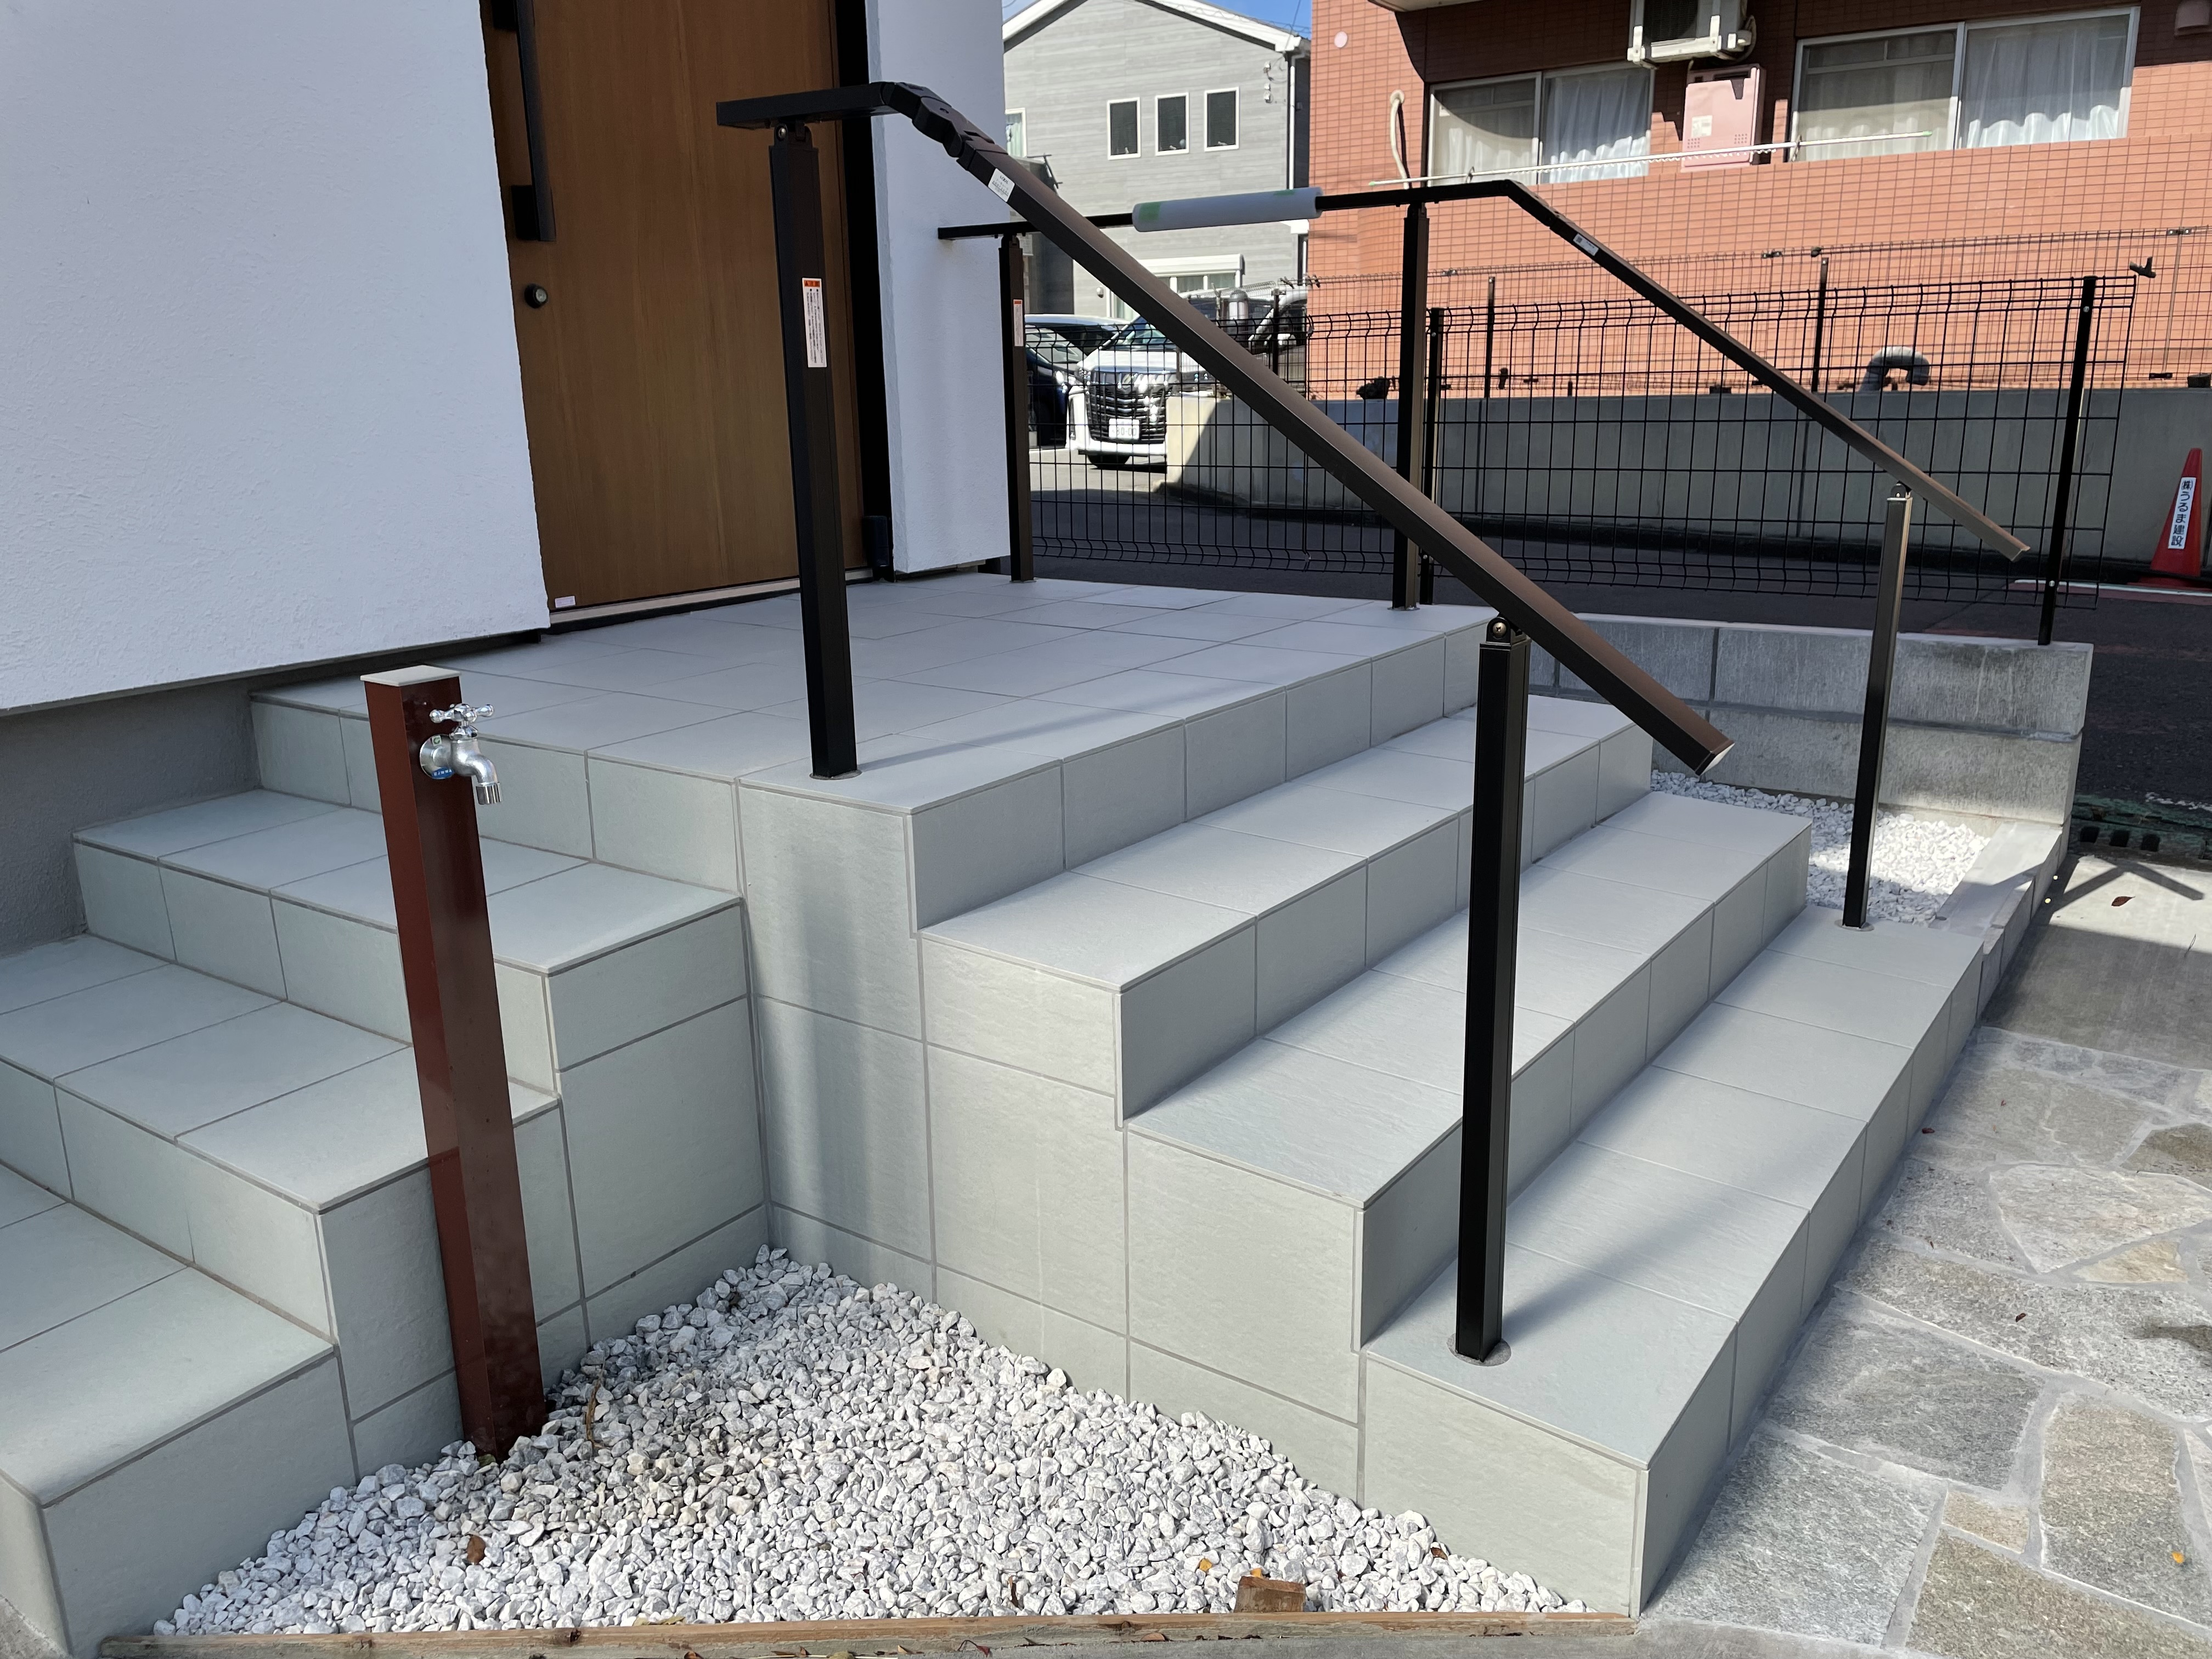 神奈川県綾瀬市Dさん施工現場の門扉アフター画像3/建物本体の階段と同じタイルの階段を増設+立水栓+砂利